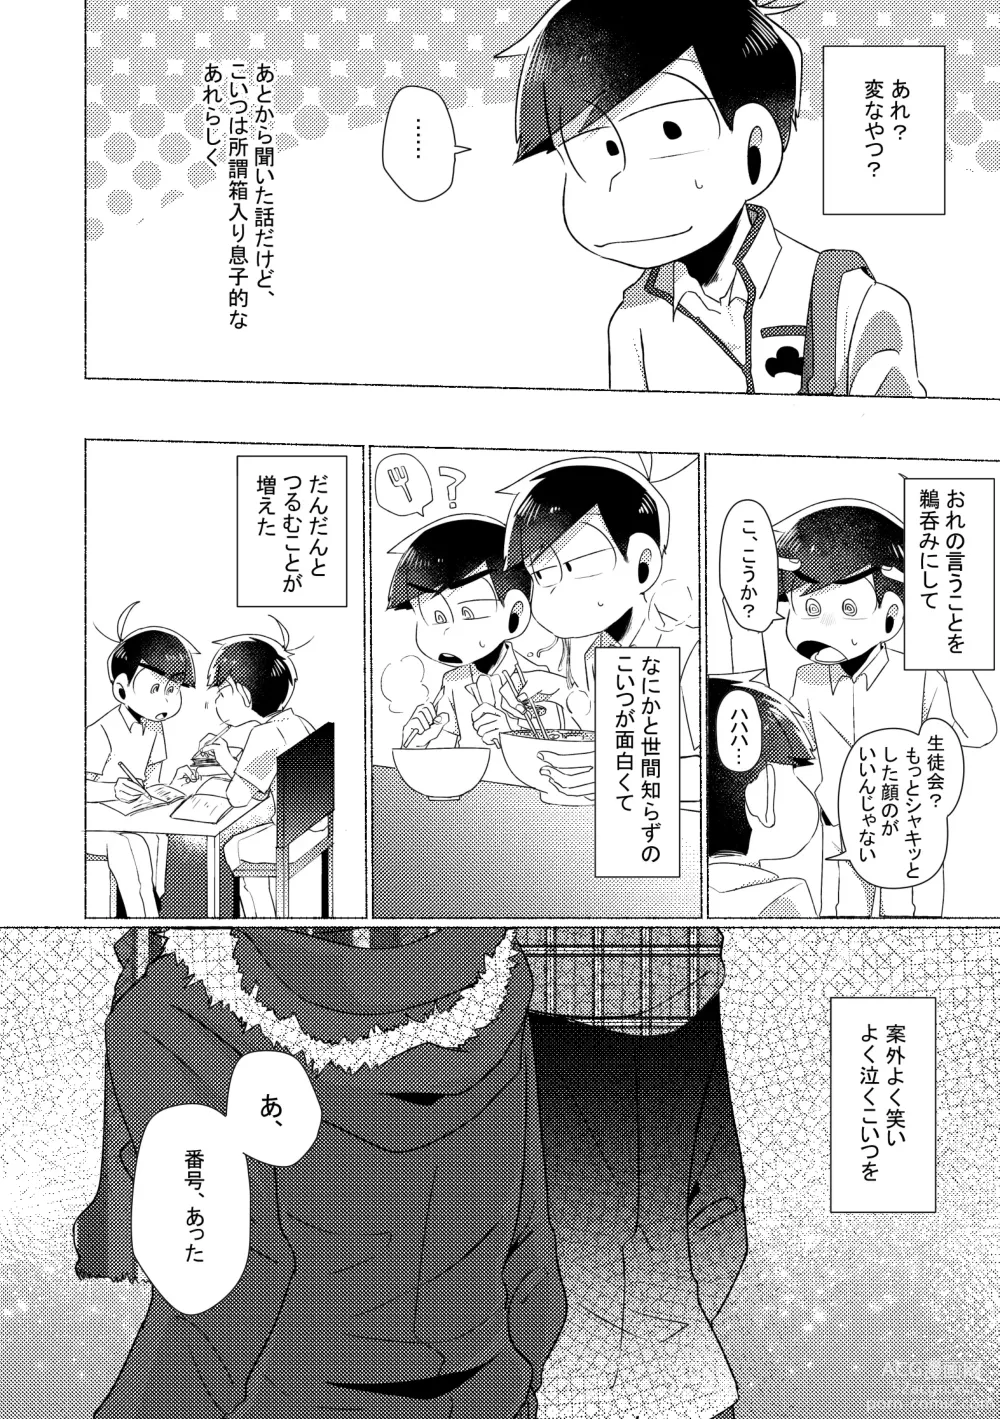 Page 5 of doujinshi Aperitif